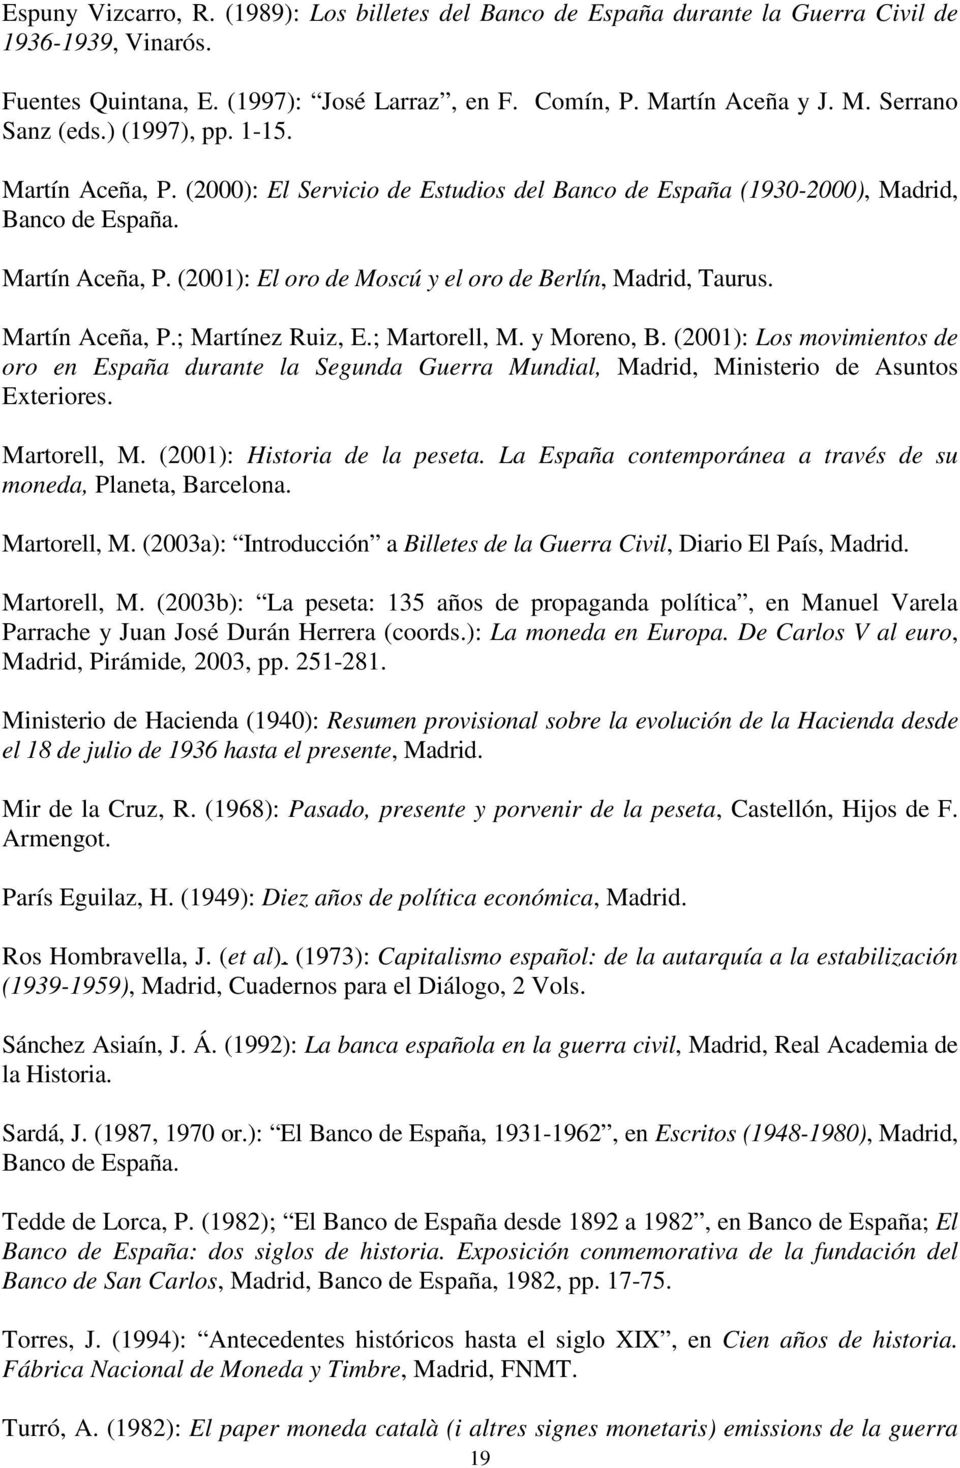 Martín Aceña, P.; Martínez Ruiz, E.; Martorell, M. y Moreno, B. (2001): Los movimientos de oro en España durante la Segunda Guerra Mundial, Madrid, Ministerio de Asuntos Exteriores. Martorell, M. (2001): Historia de la peseta.